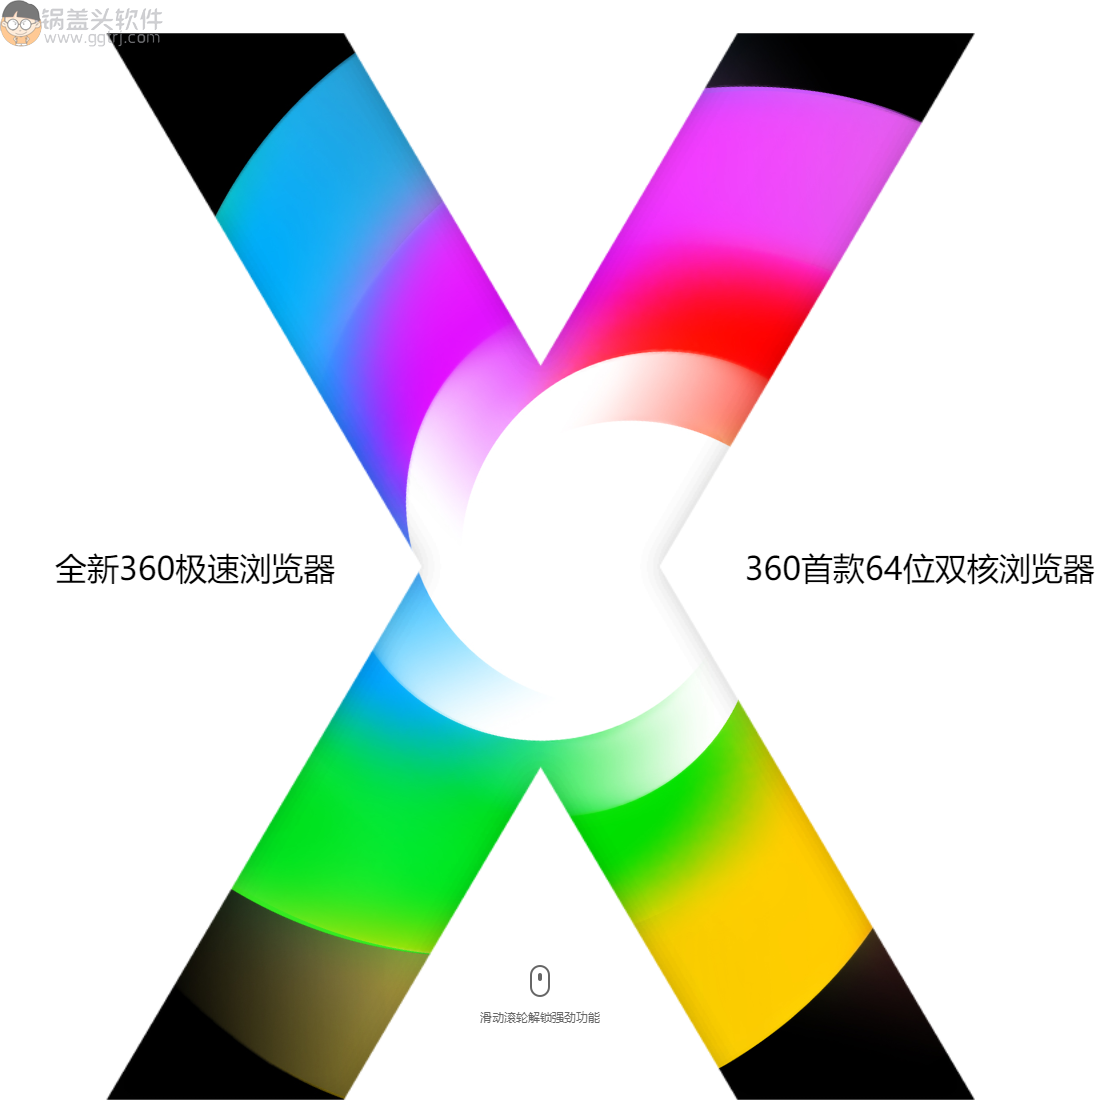 360极速浏览器X-v21.0.1216.0 _绿色便携版,最新360极速浏览器,浏览器,第1张